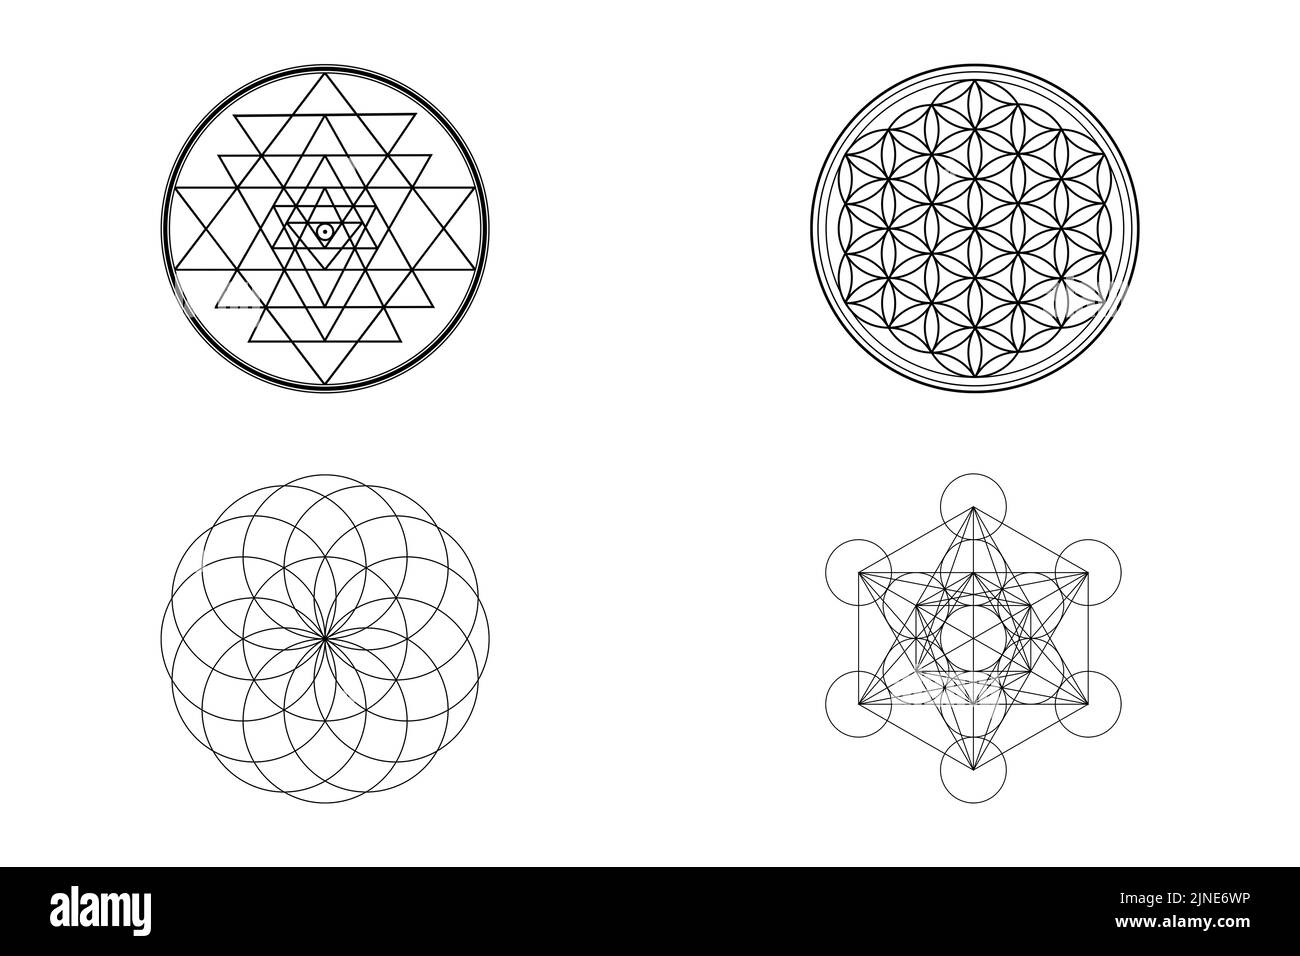 Simboli della geometria Sacra, Sri Yantra, Fiore della vita, Toro, simboli Metatron isolati su sfondo bianco Foto Stock